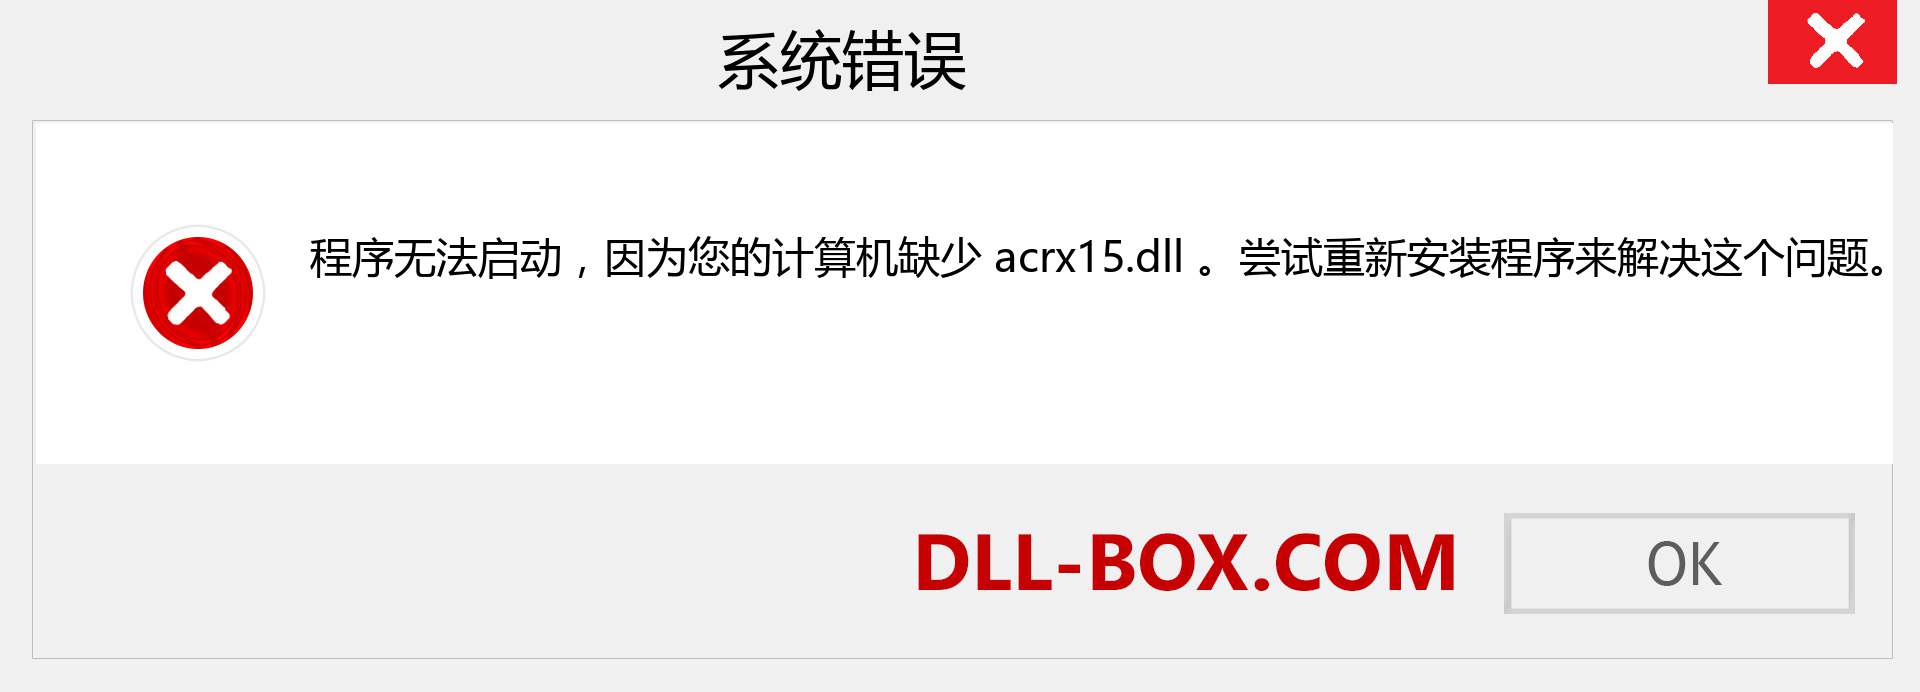 acrx15.dll 文件丢失？。 适用于 Windows 7、8、10 的下载 - 修复 Windows、照片、图像上的 acrx15 dll 丢失错误